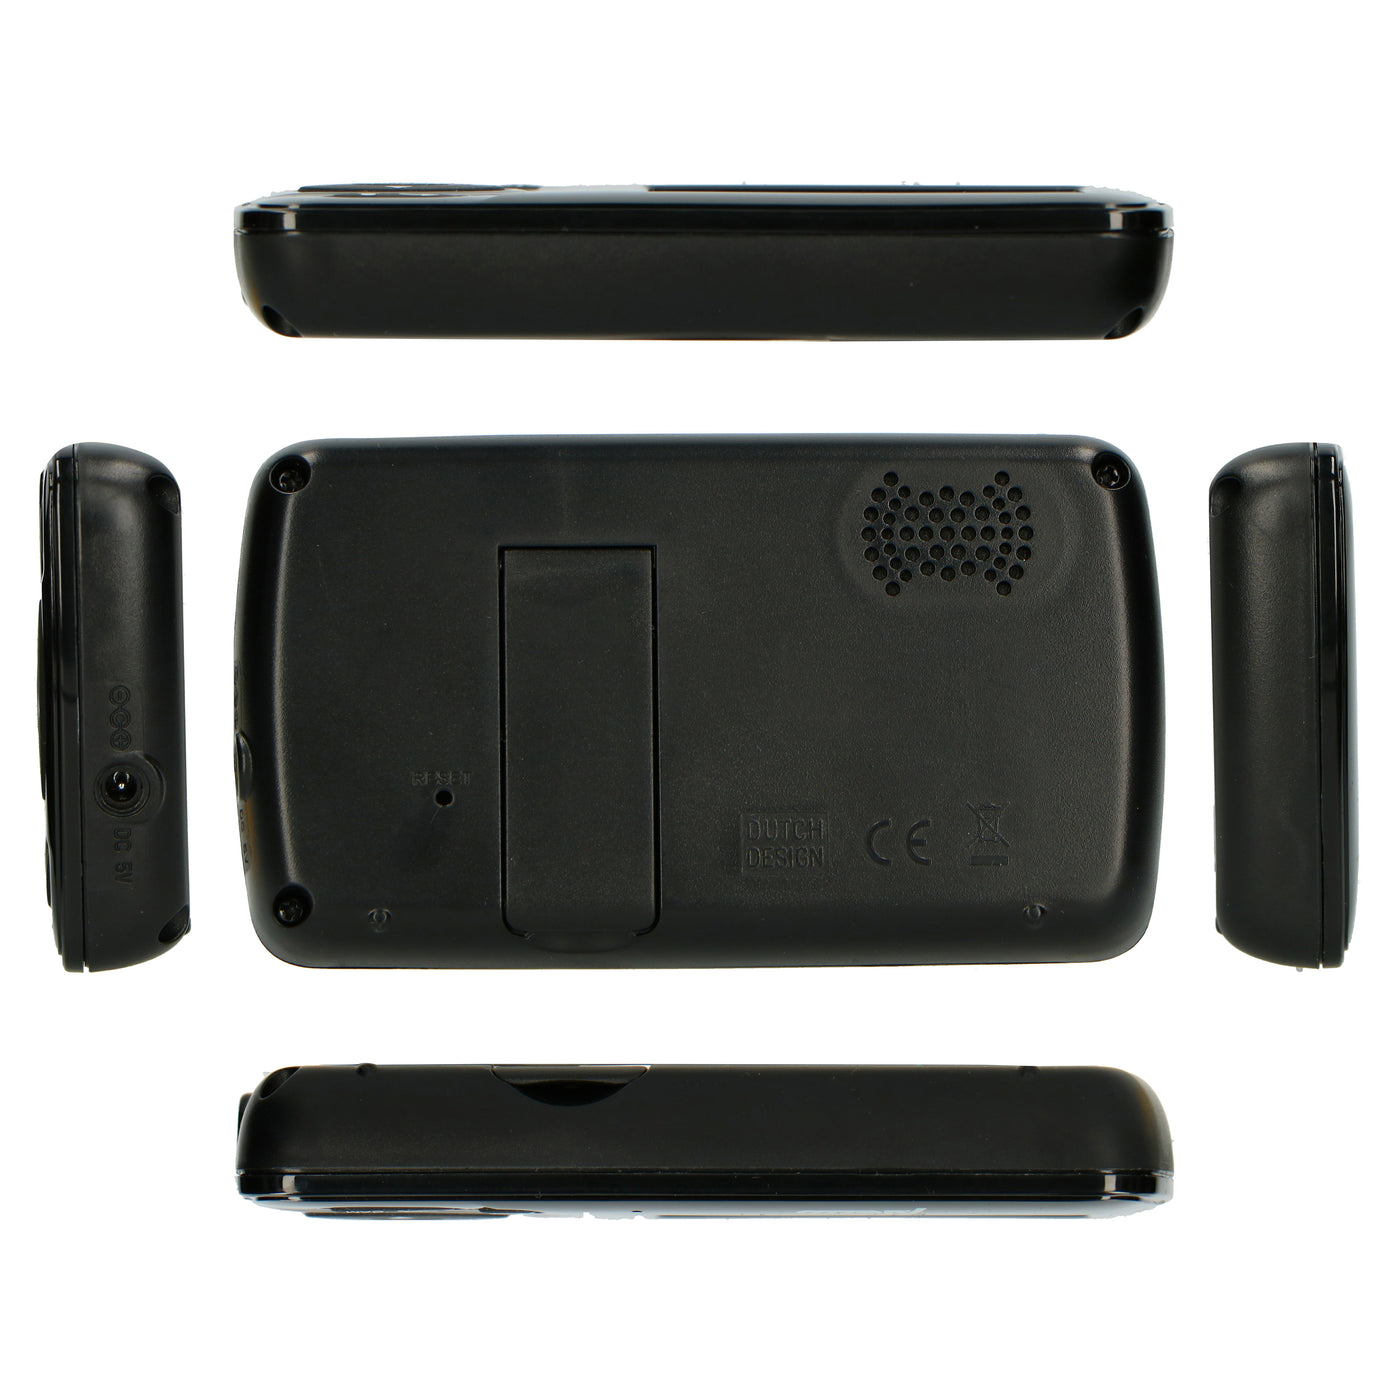 Alecto DVM71BK - Babyphone avec caméra et écran couleur 2.4", noir